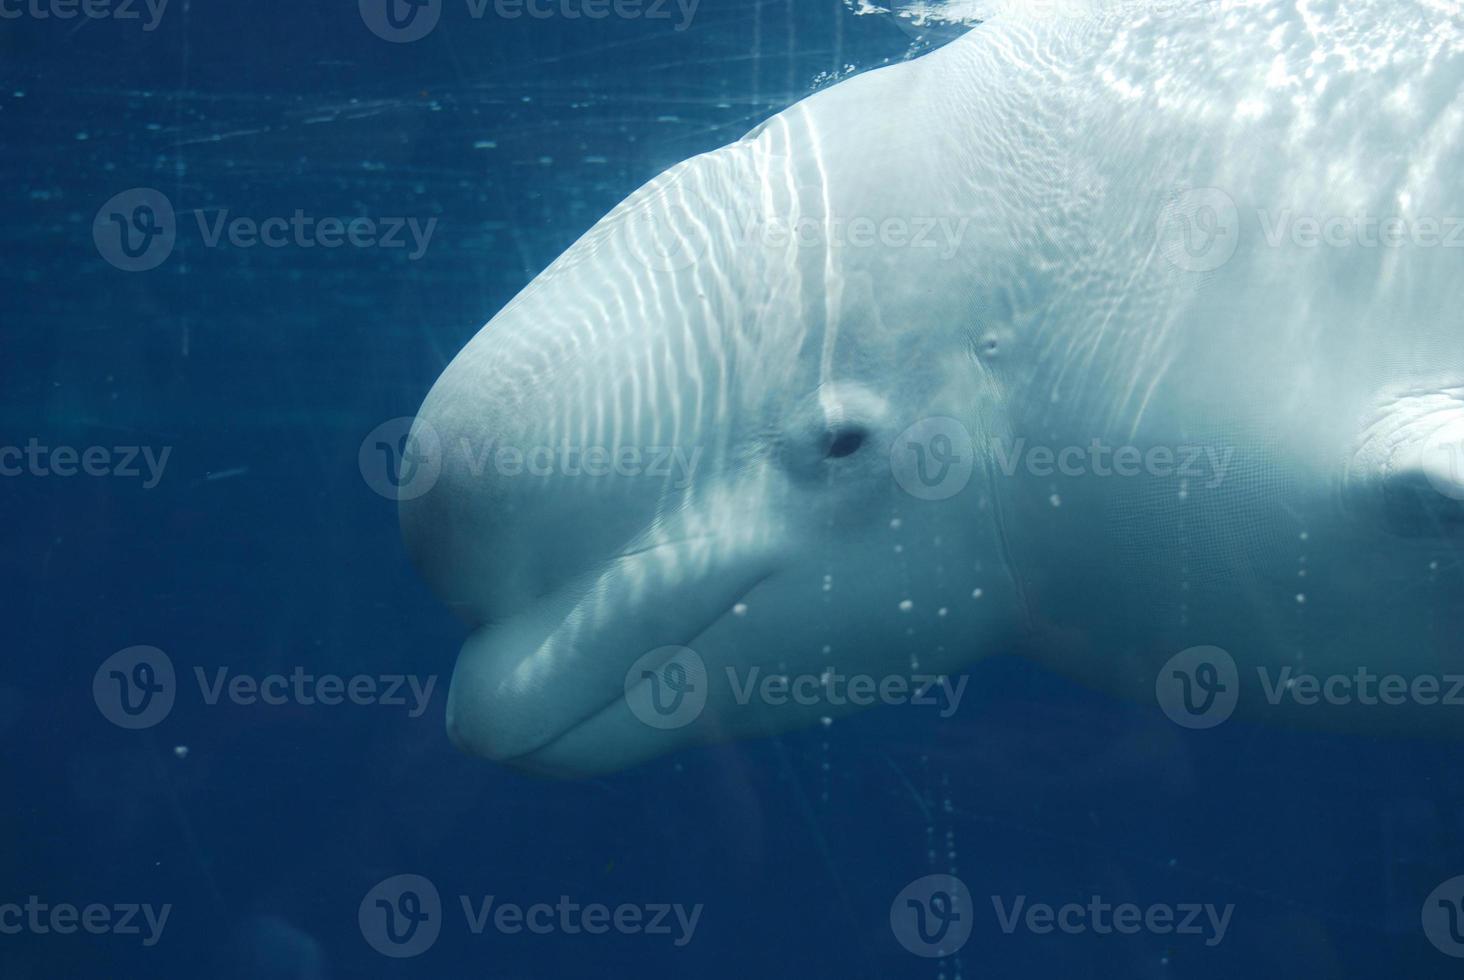 incrível olhar para o perfil de uma baleia beluga foto